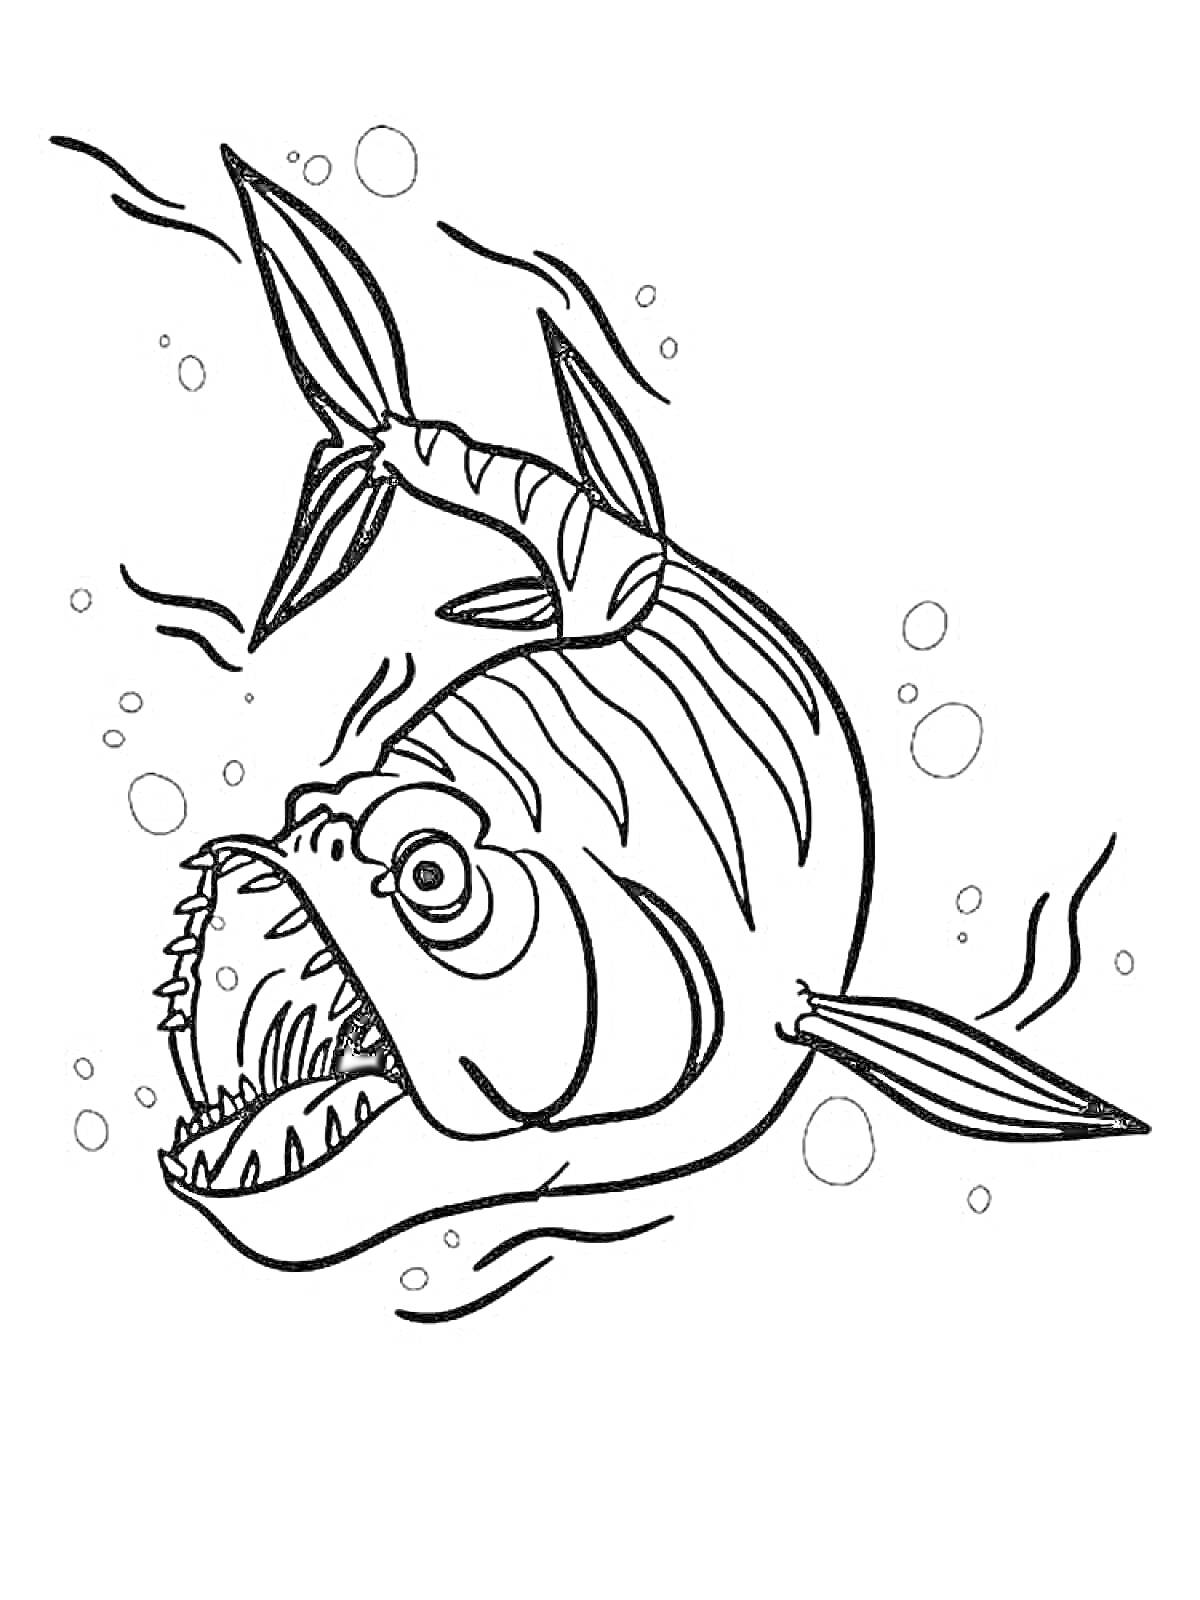 Раскраска Агрессивная рыба с большими зубами и пузырями вокруг